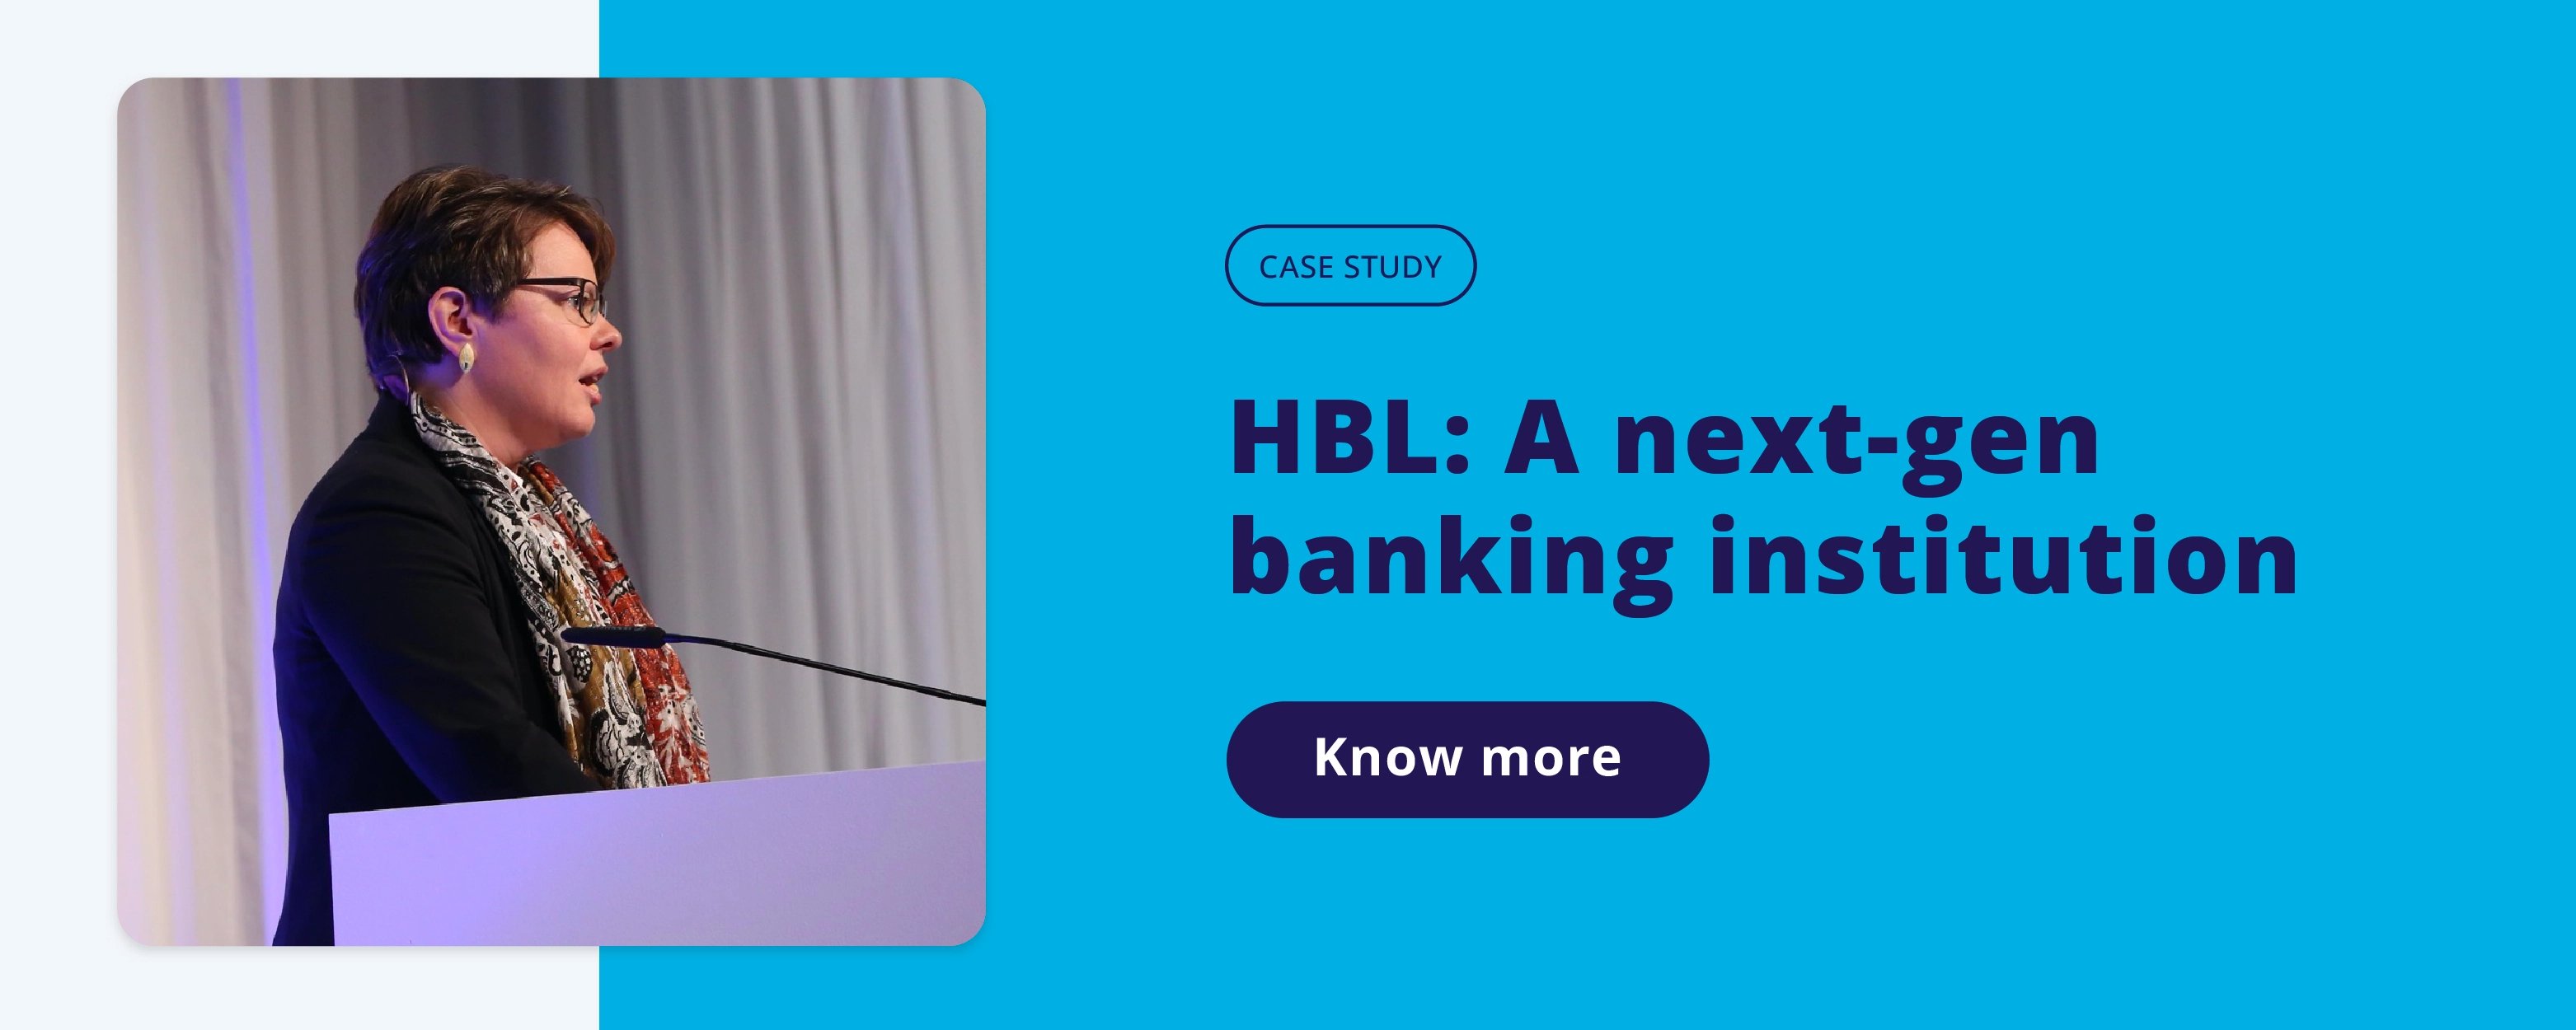 HBL_next_gen_banking_institution